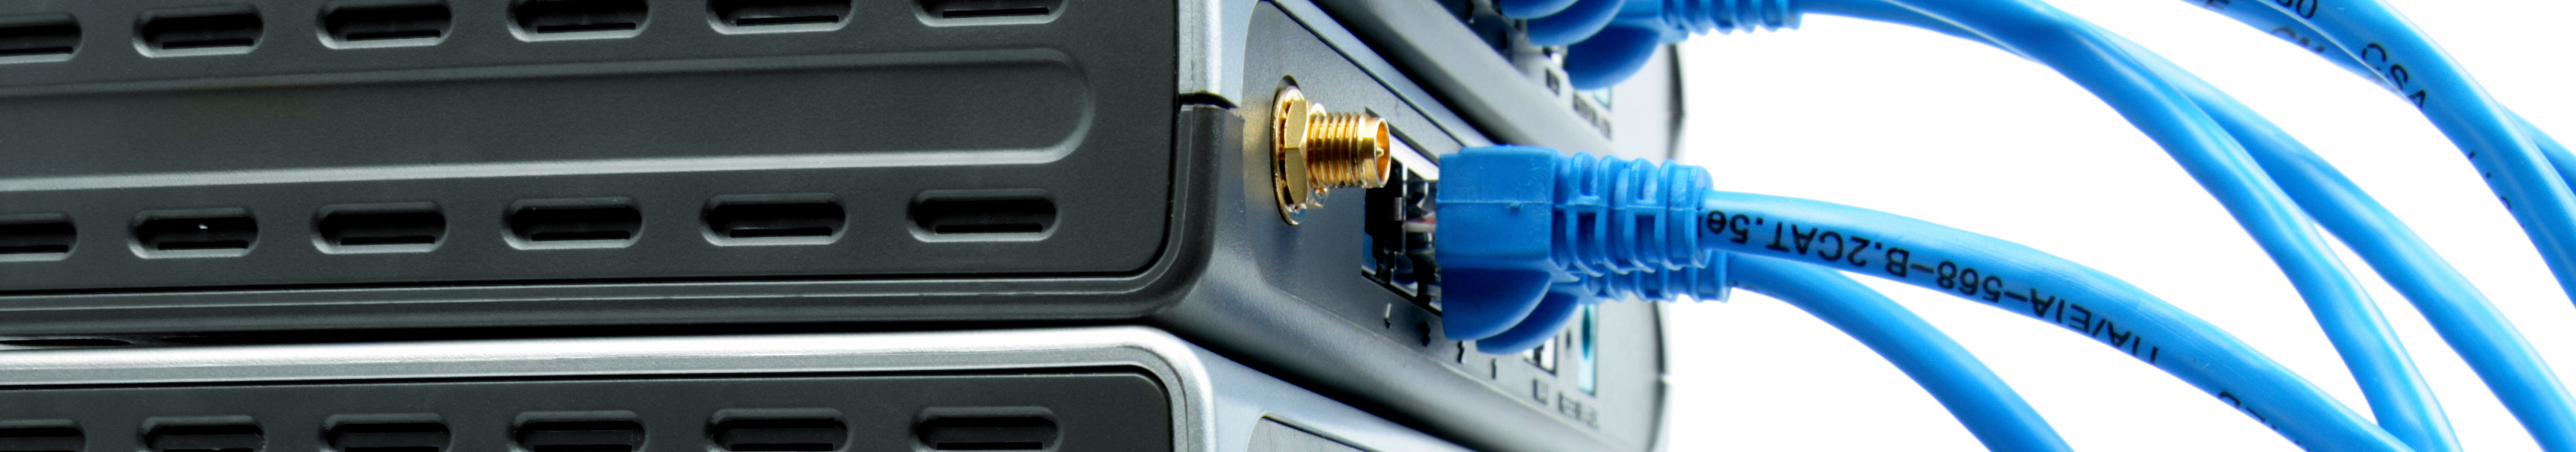 Blaue Kabel in PC-Laufwerken visualisieren den elektronischen Datenaustausch EDI